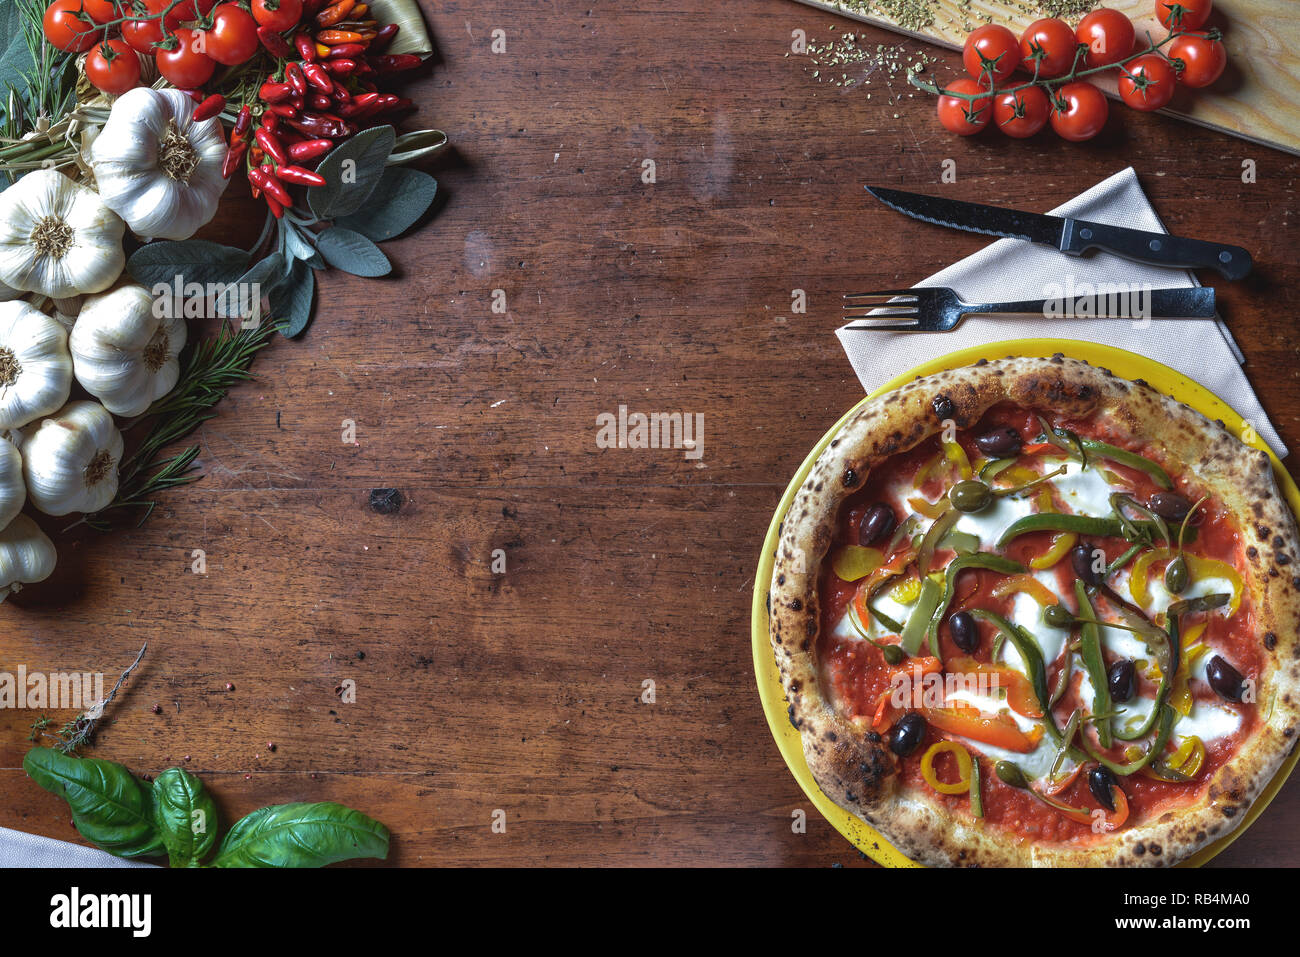 Vue de dessus le fond de la pizza napolitaine italien avec des poivrons, olives, tomates et fromage. composition du châssis avec des ingrédients d'espace libre pour le texte Banque D'Images